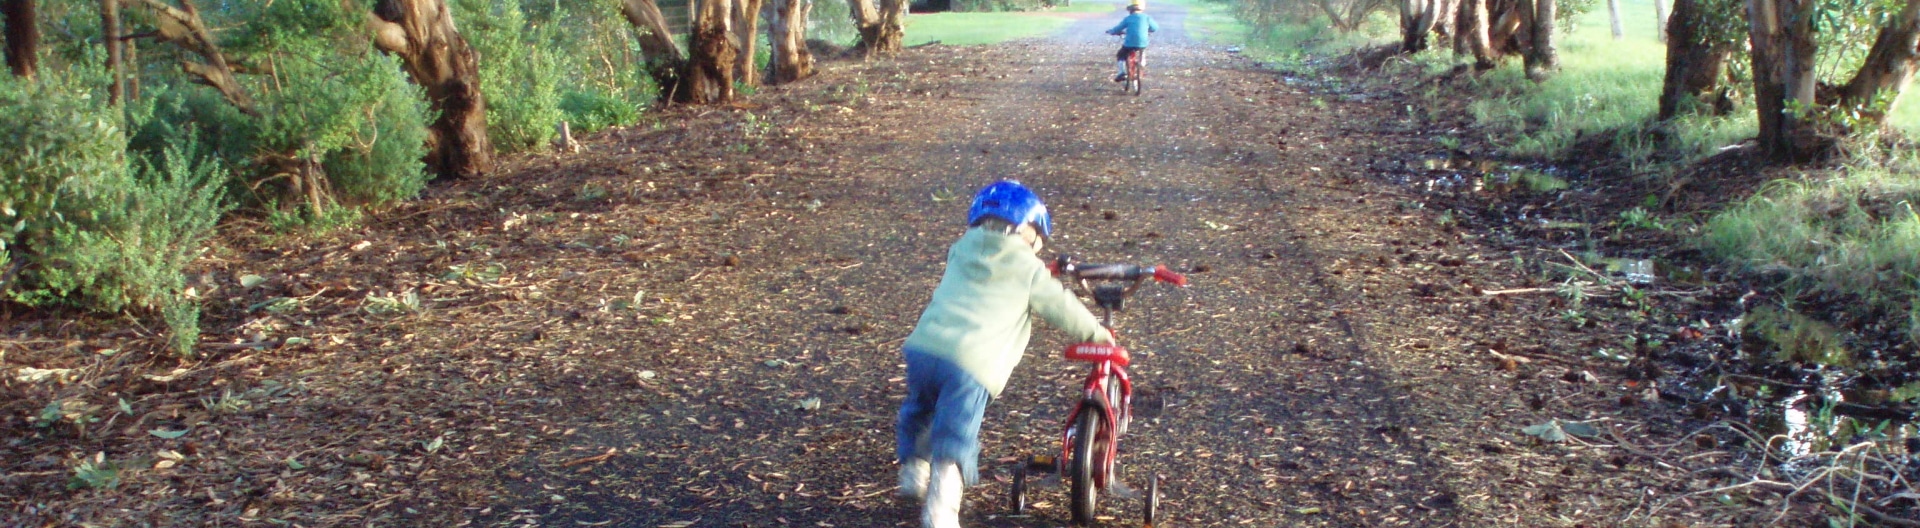 Fun Kids Activities - Kids on bikes